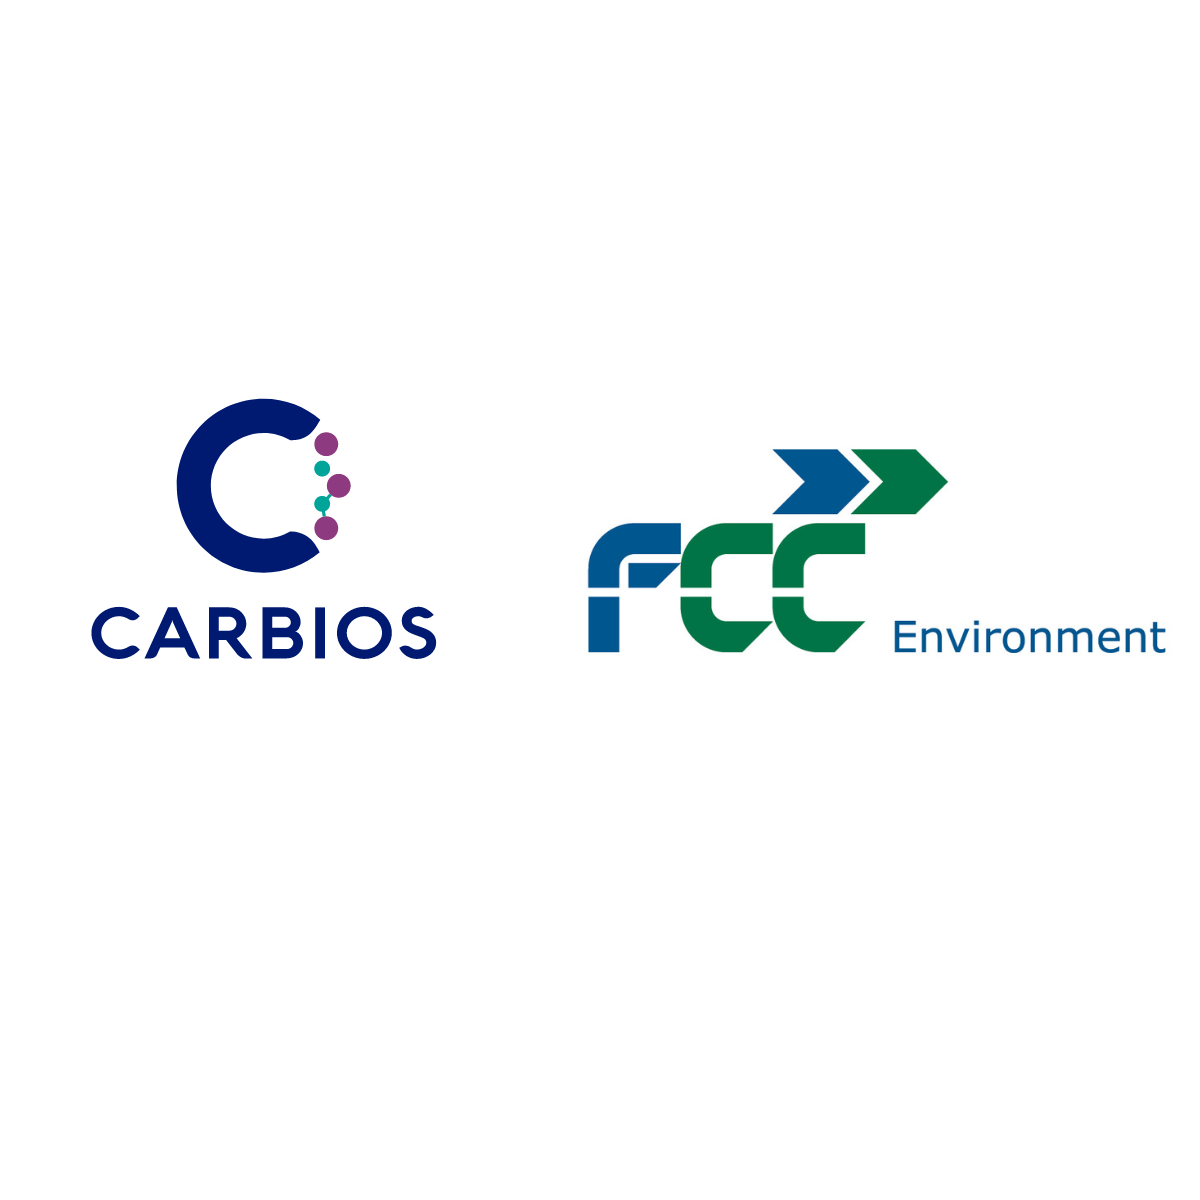 CARBIOS FCC